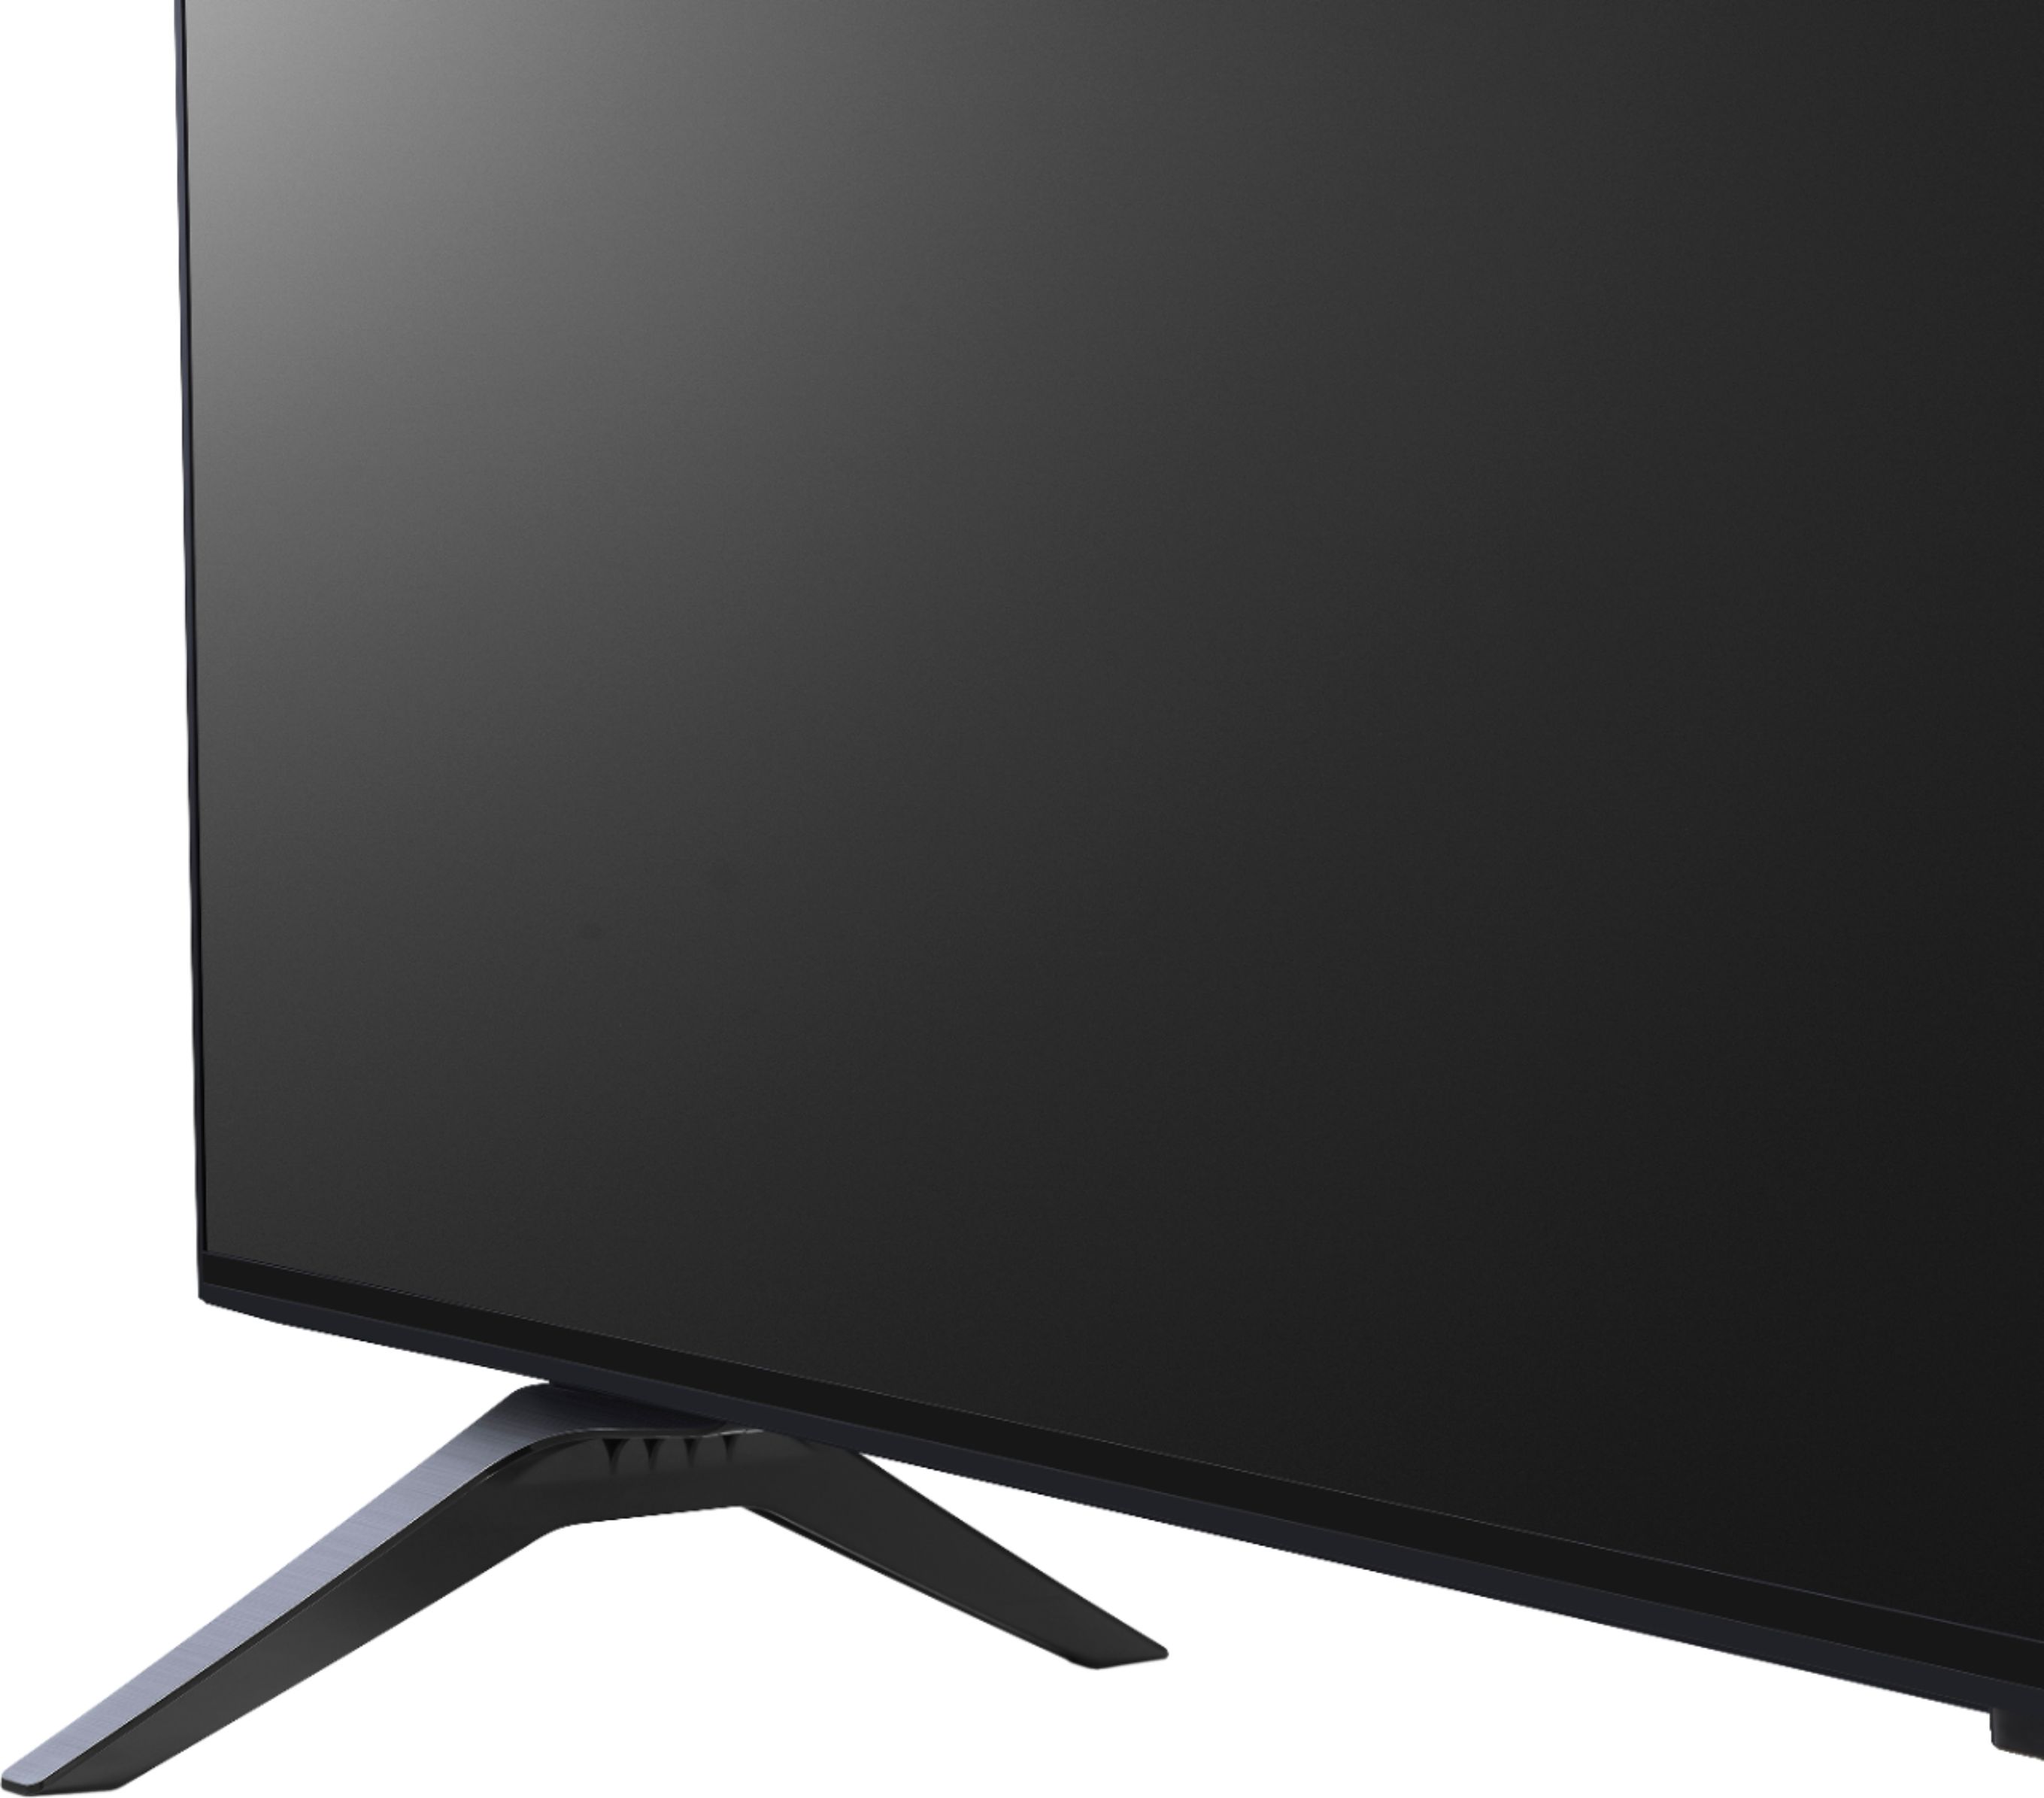 43NANO75UPA by LG - LG NanoCell 75 Series 2021 43 inch 4K Smart UHD TV w/  AI ThinQ® (42.5 Diag)